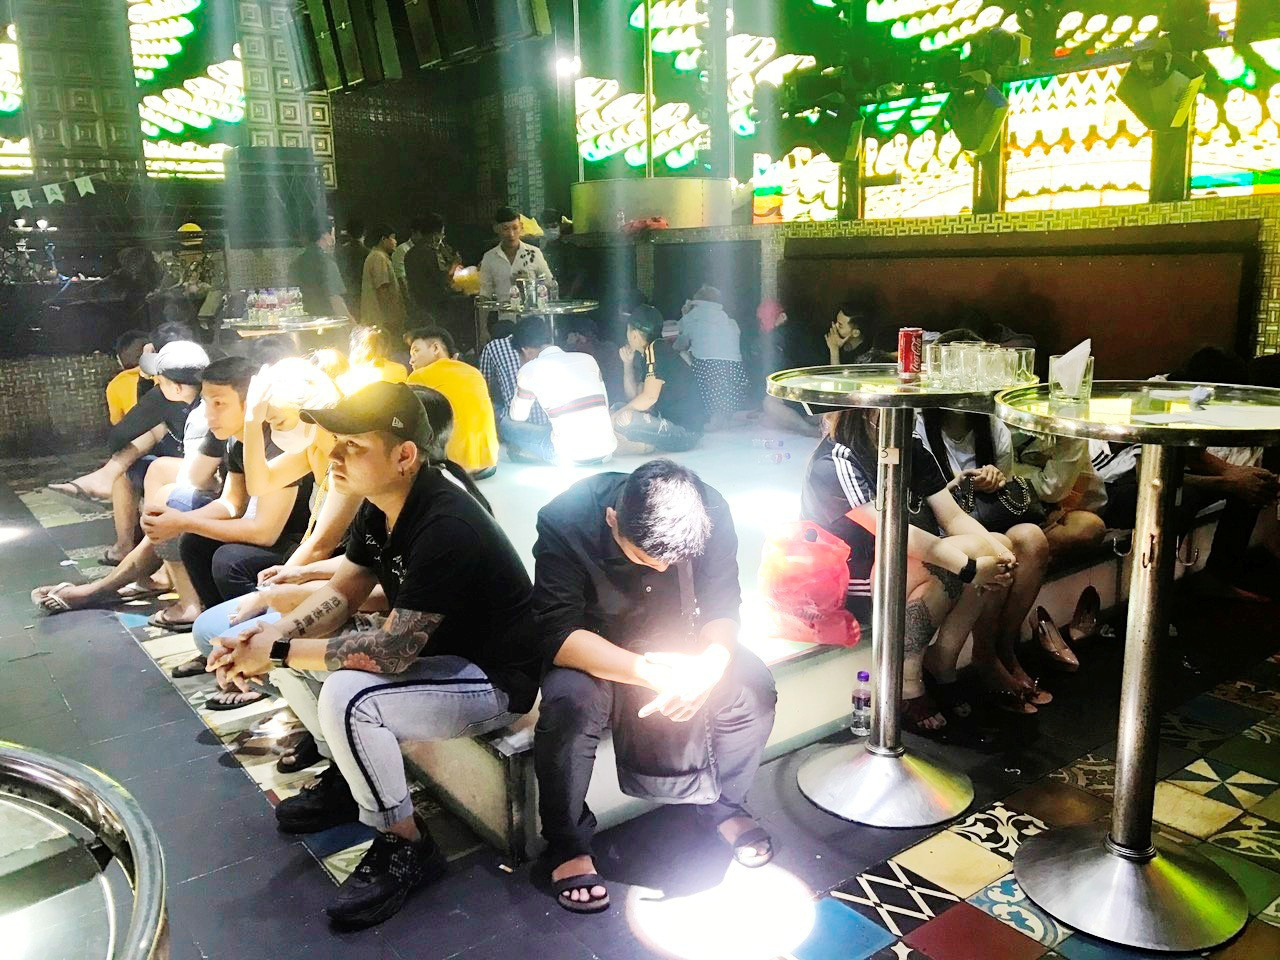 Phát hiện 102 người đang mở tiệc ma túy” trong quán bar ở Tiền Giang - Ảnh 2.